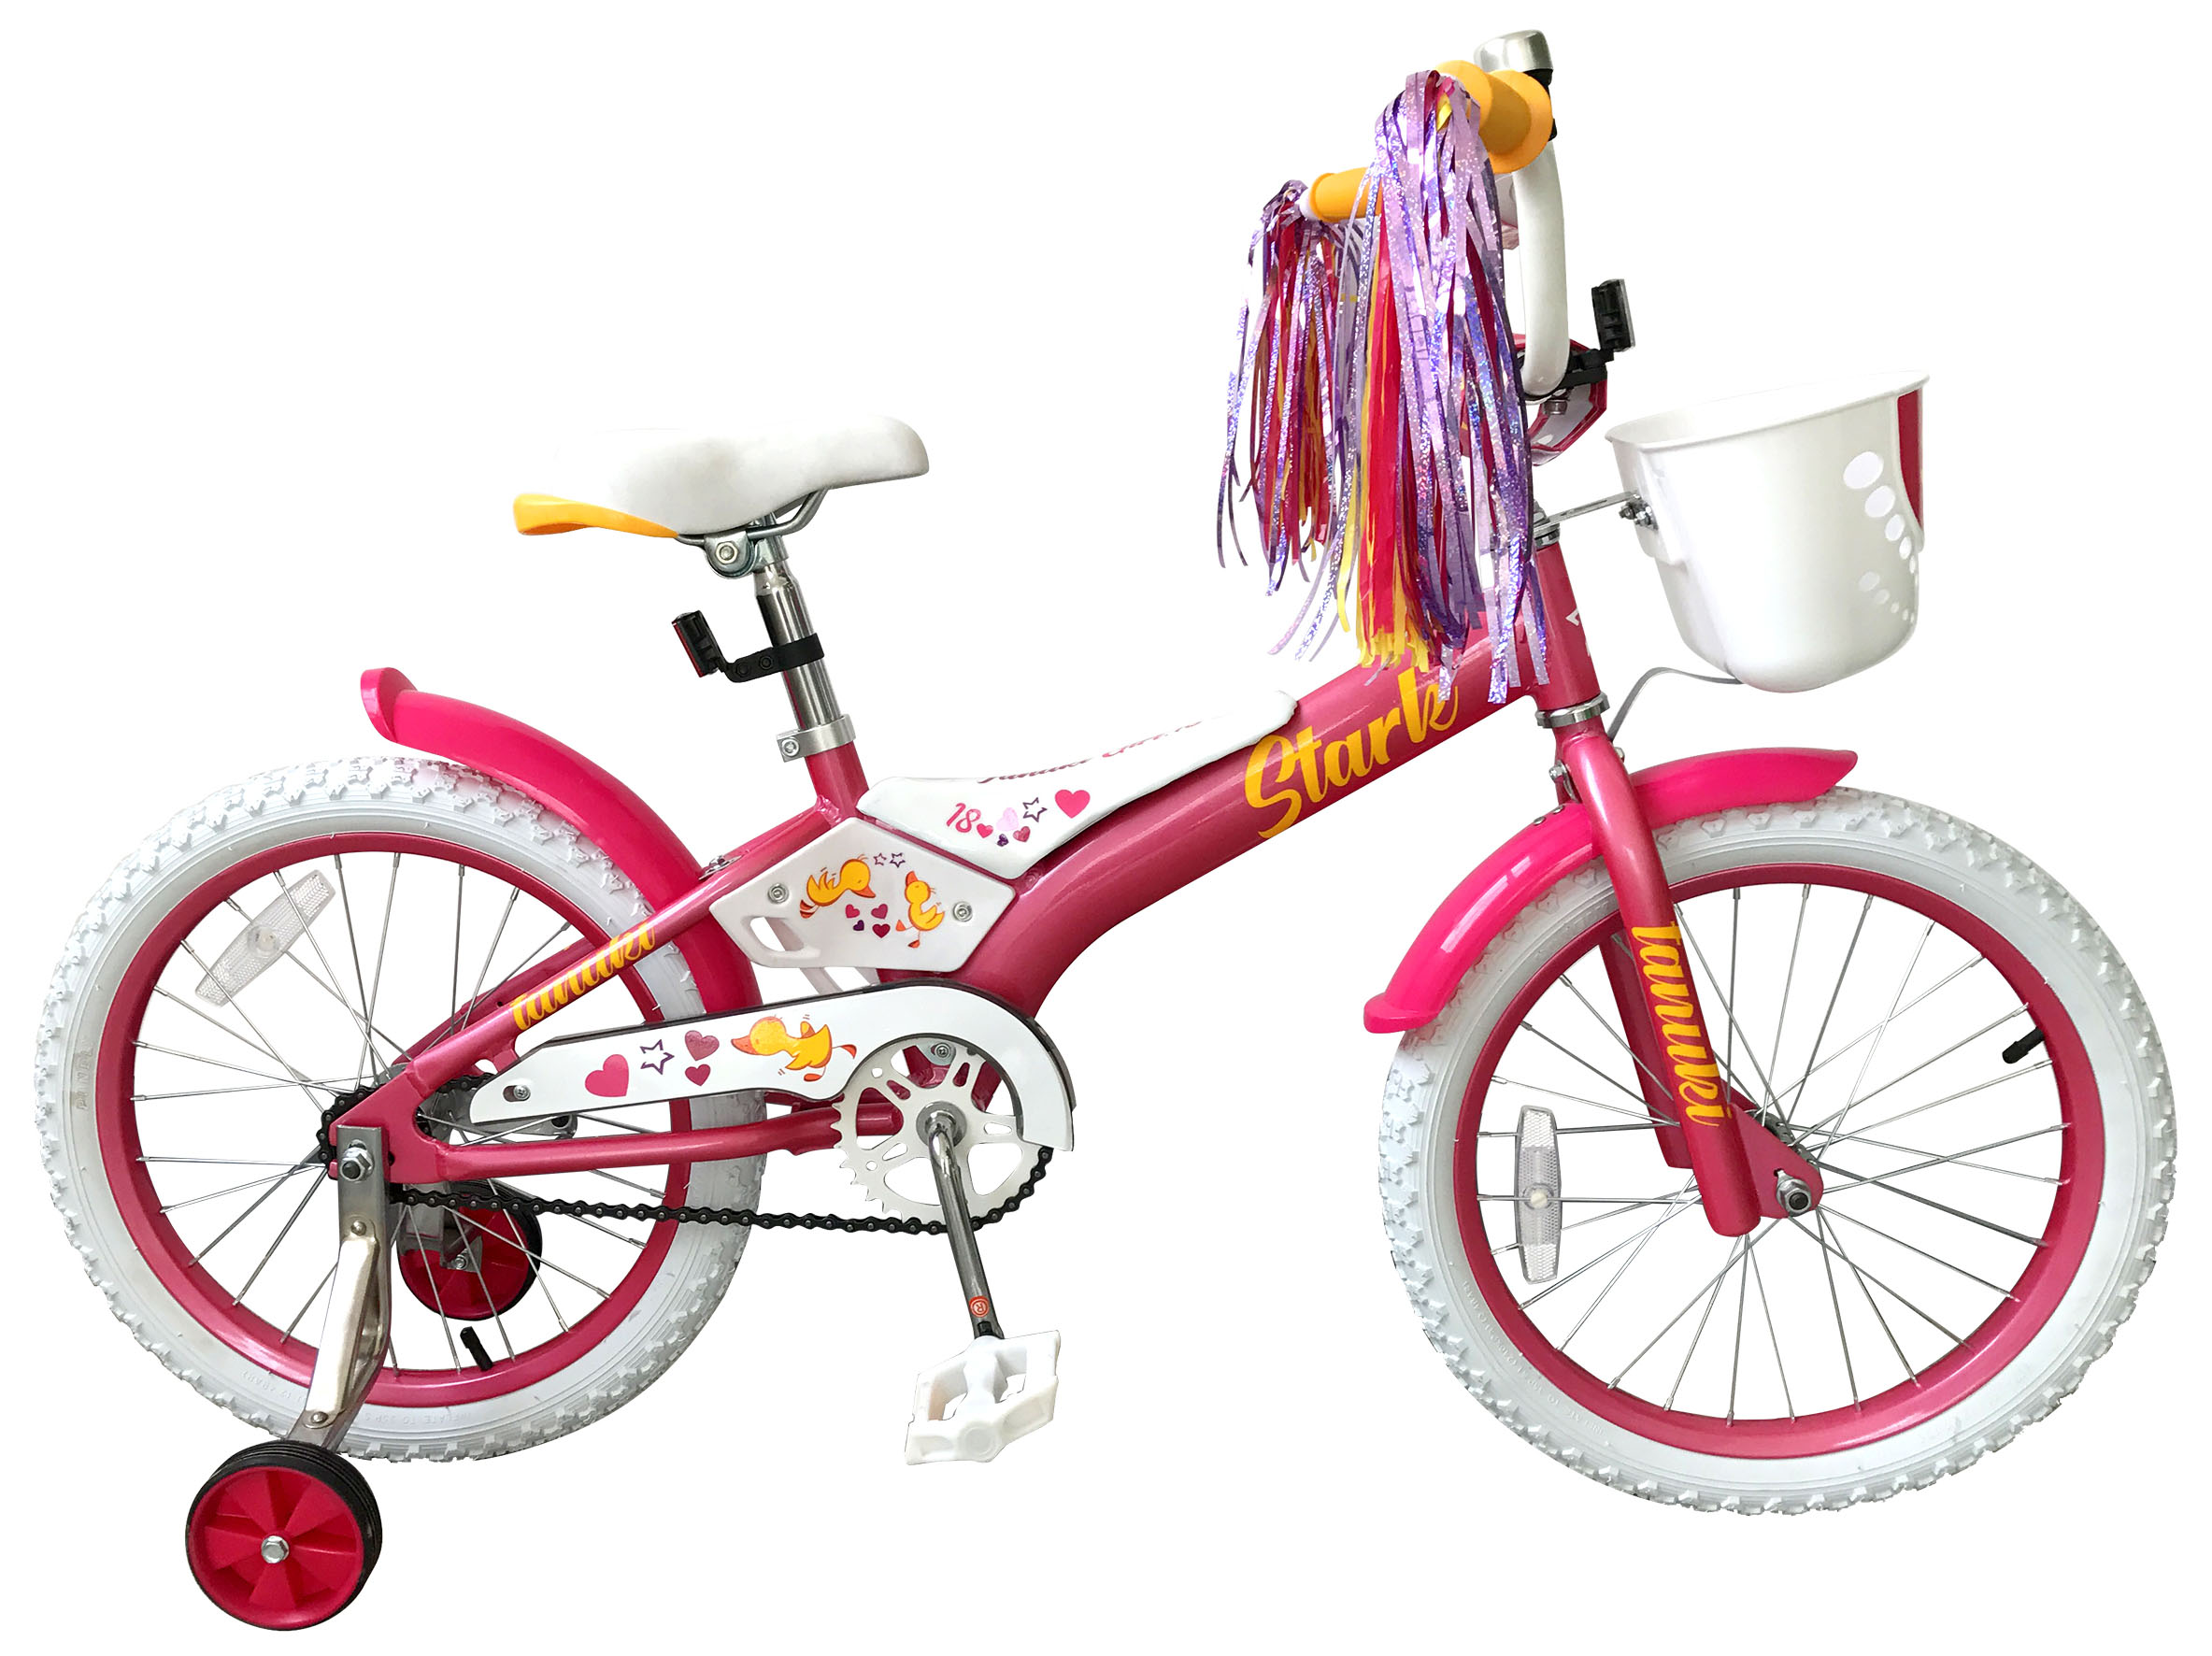  Отзывы о Детском велосипеде Stark Tanuki 18 Girl 2019